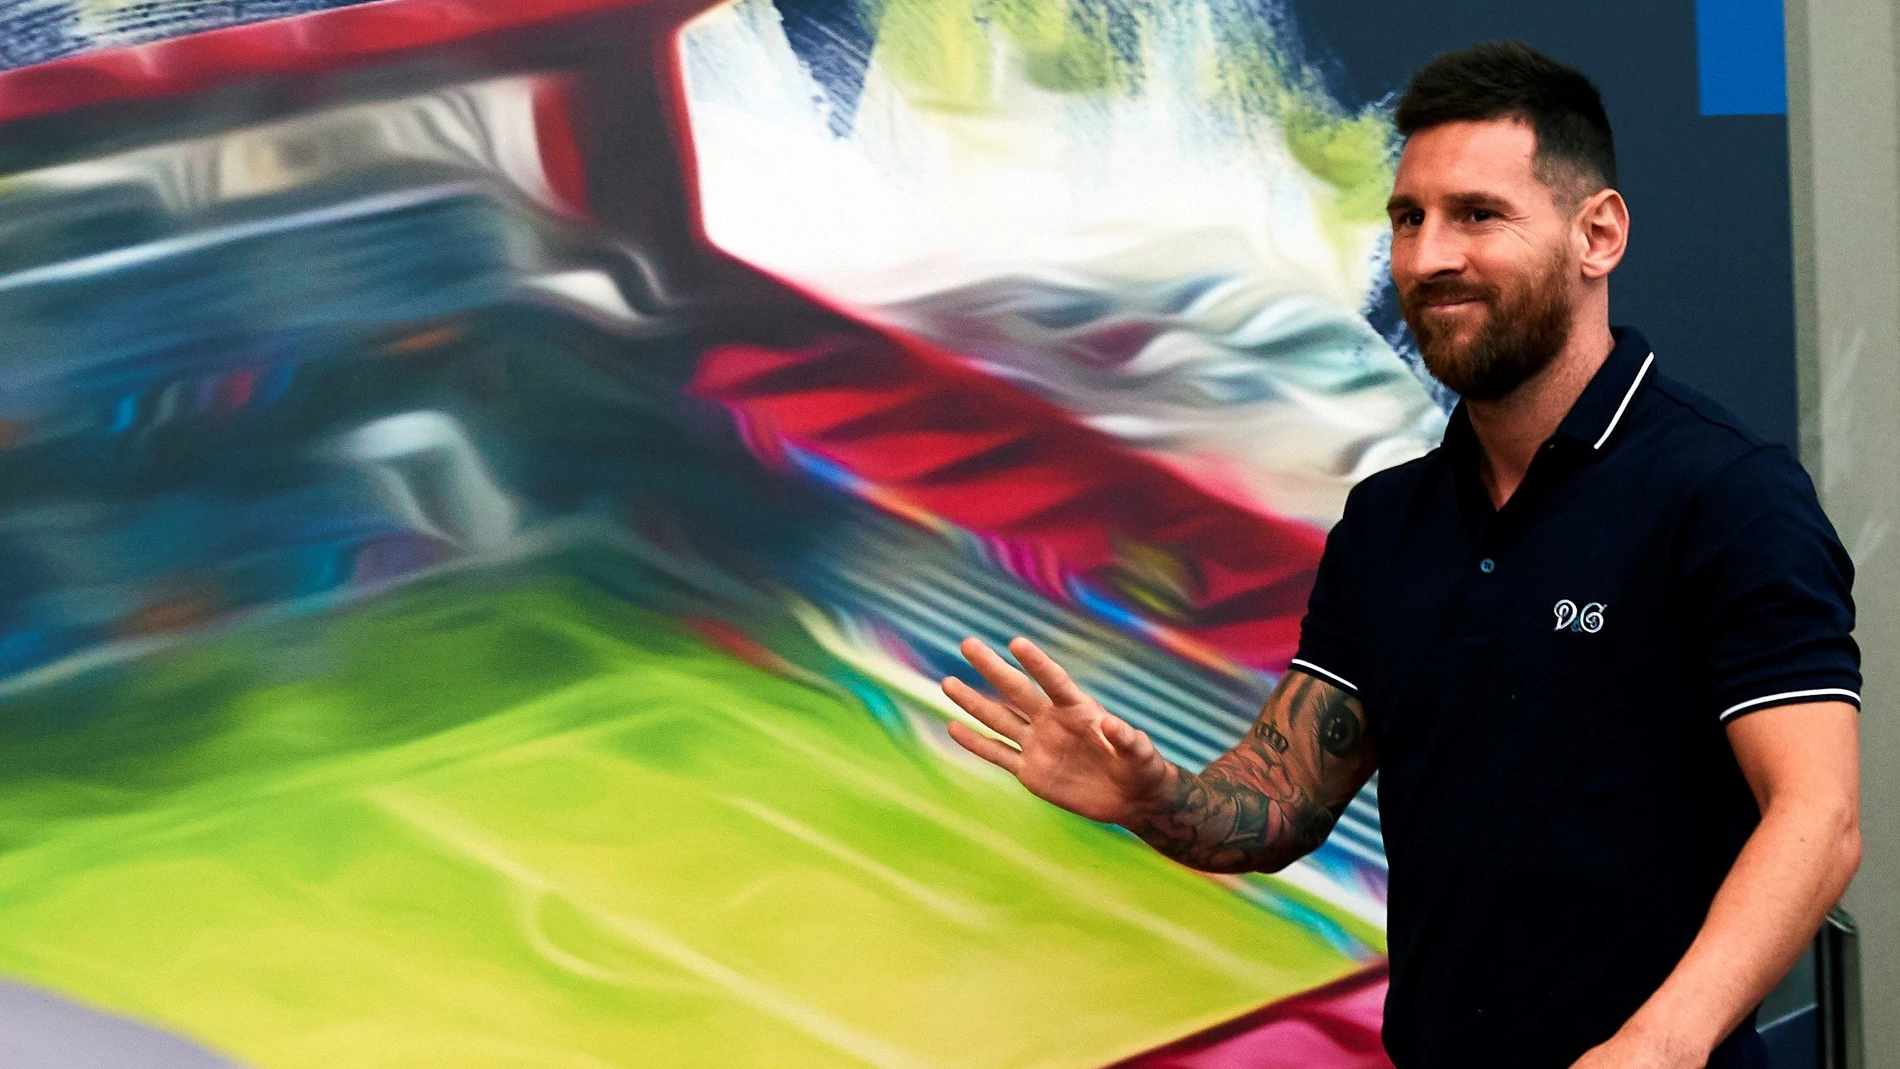 Leo Messi, jugador del FC Barcelona